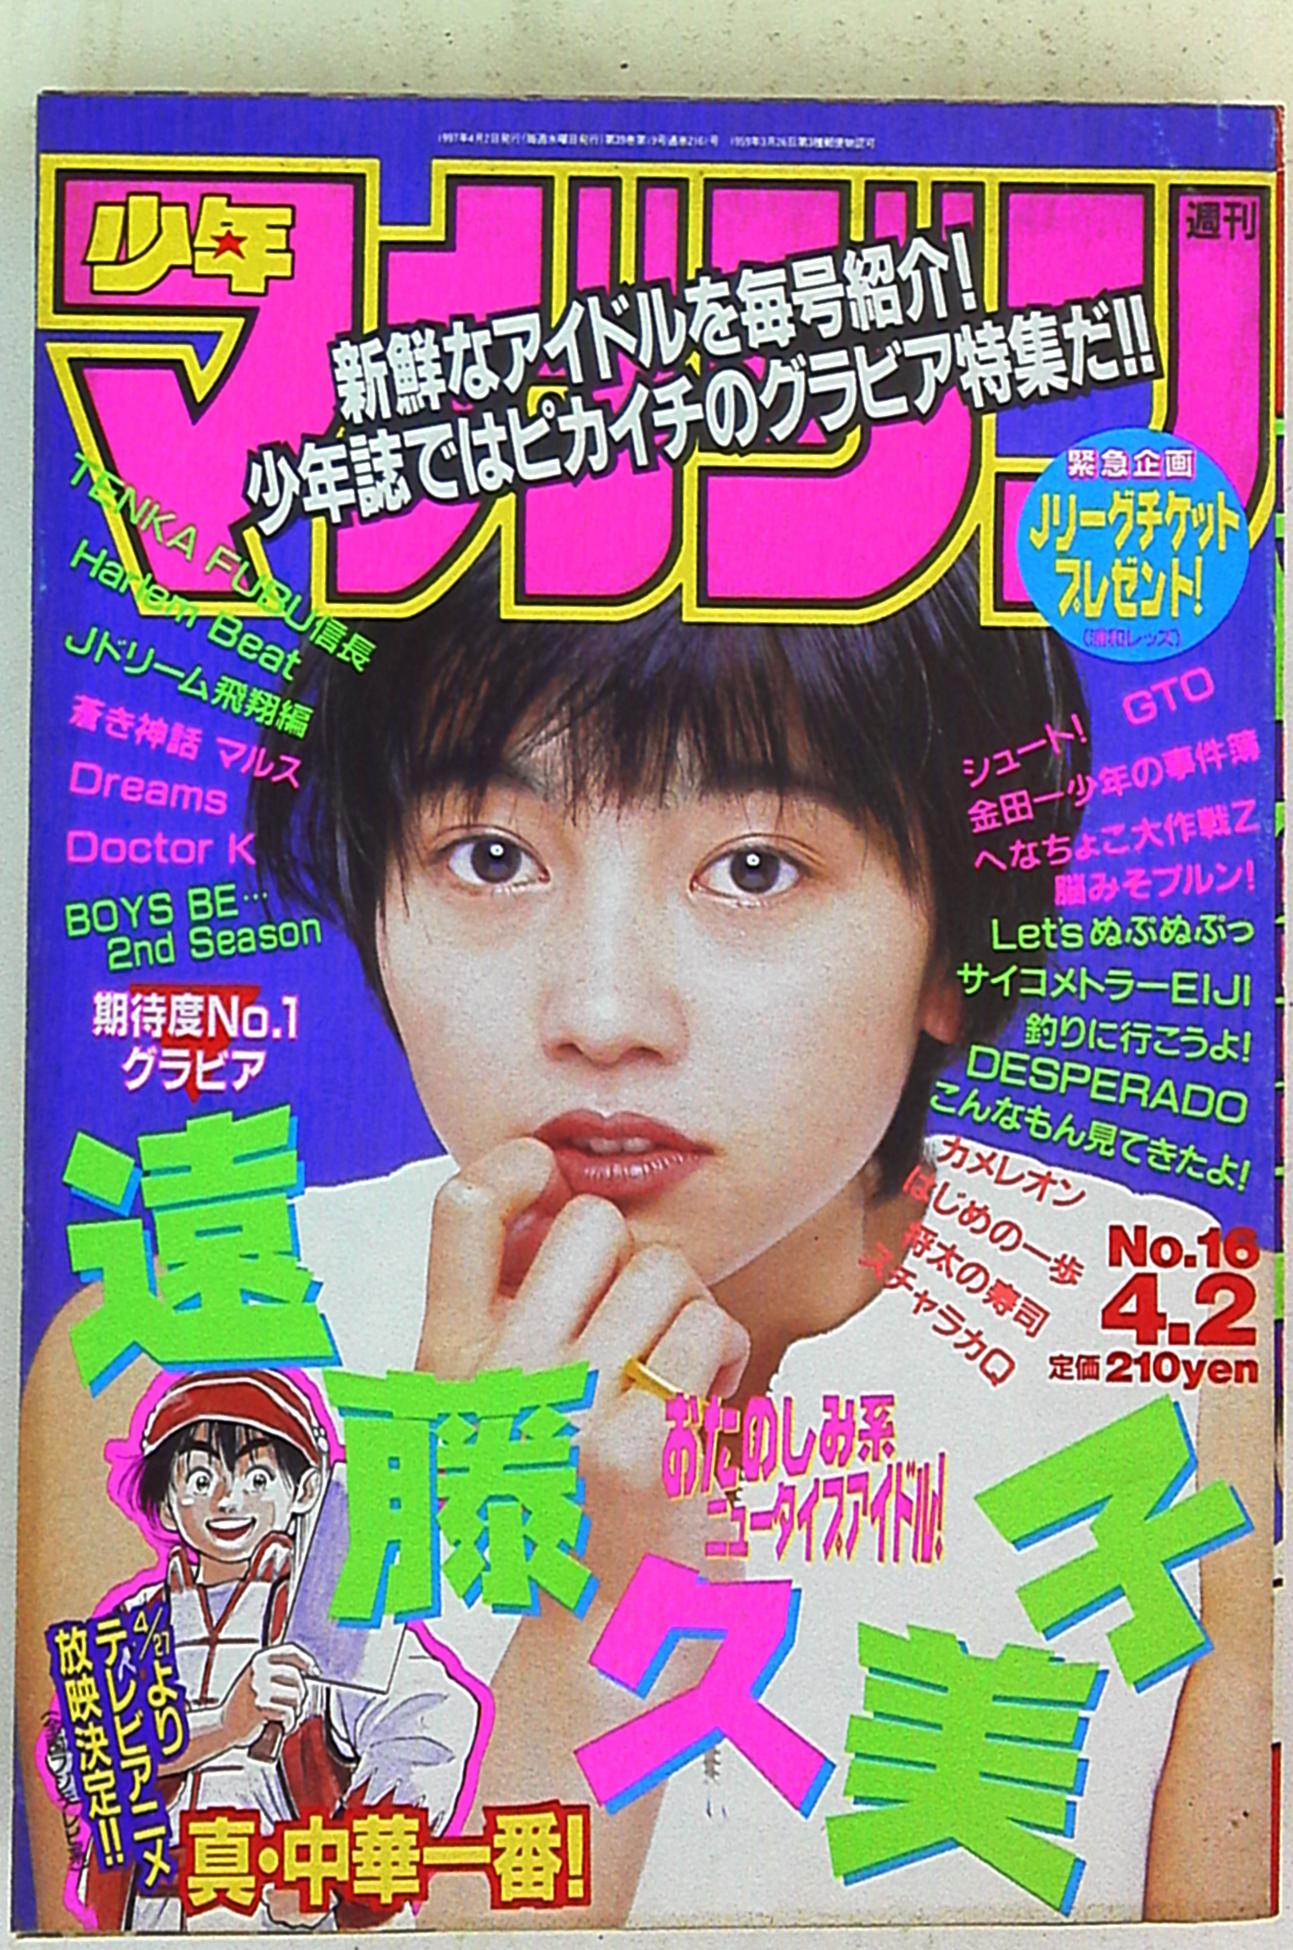 全ての 週刊少年マガジン1997年NO.47 ポスター GTO 少年漫画 - findbug.io